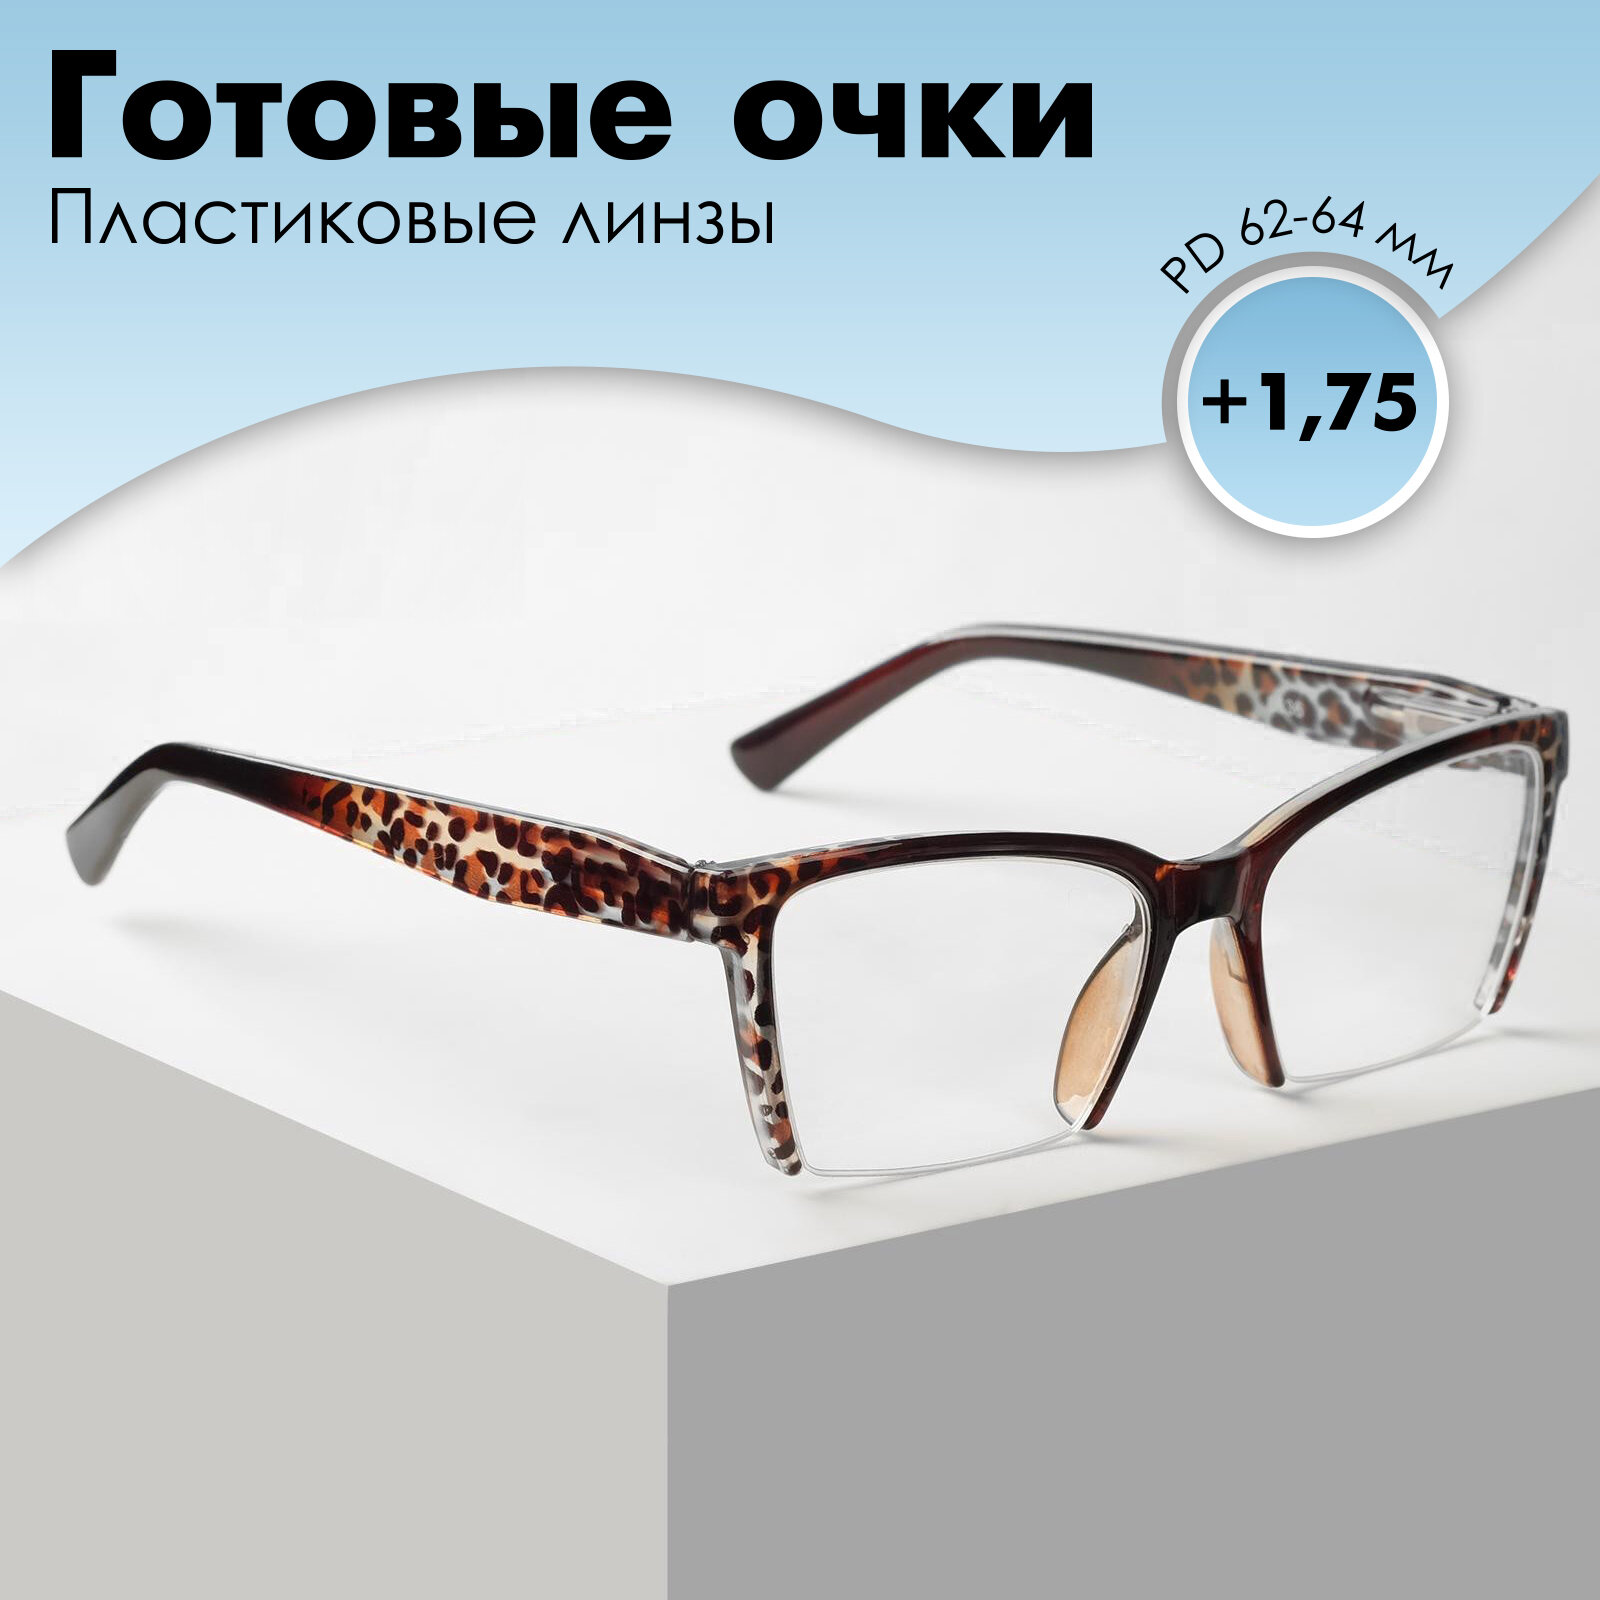 Готовые очки Восток 6636, цвет коричневый, отгибающаяся дужка, +1,75